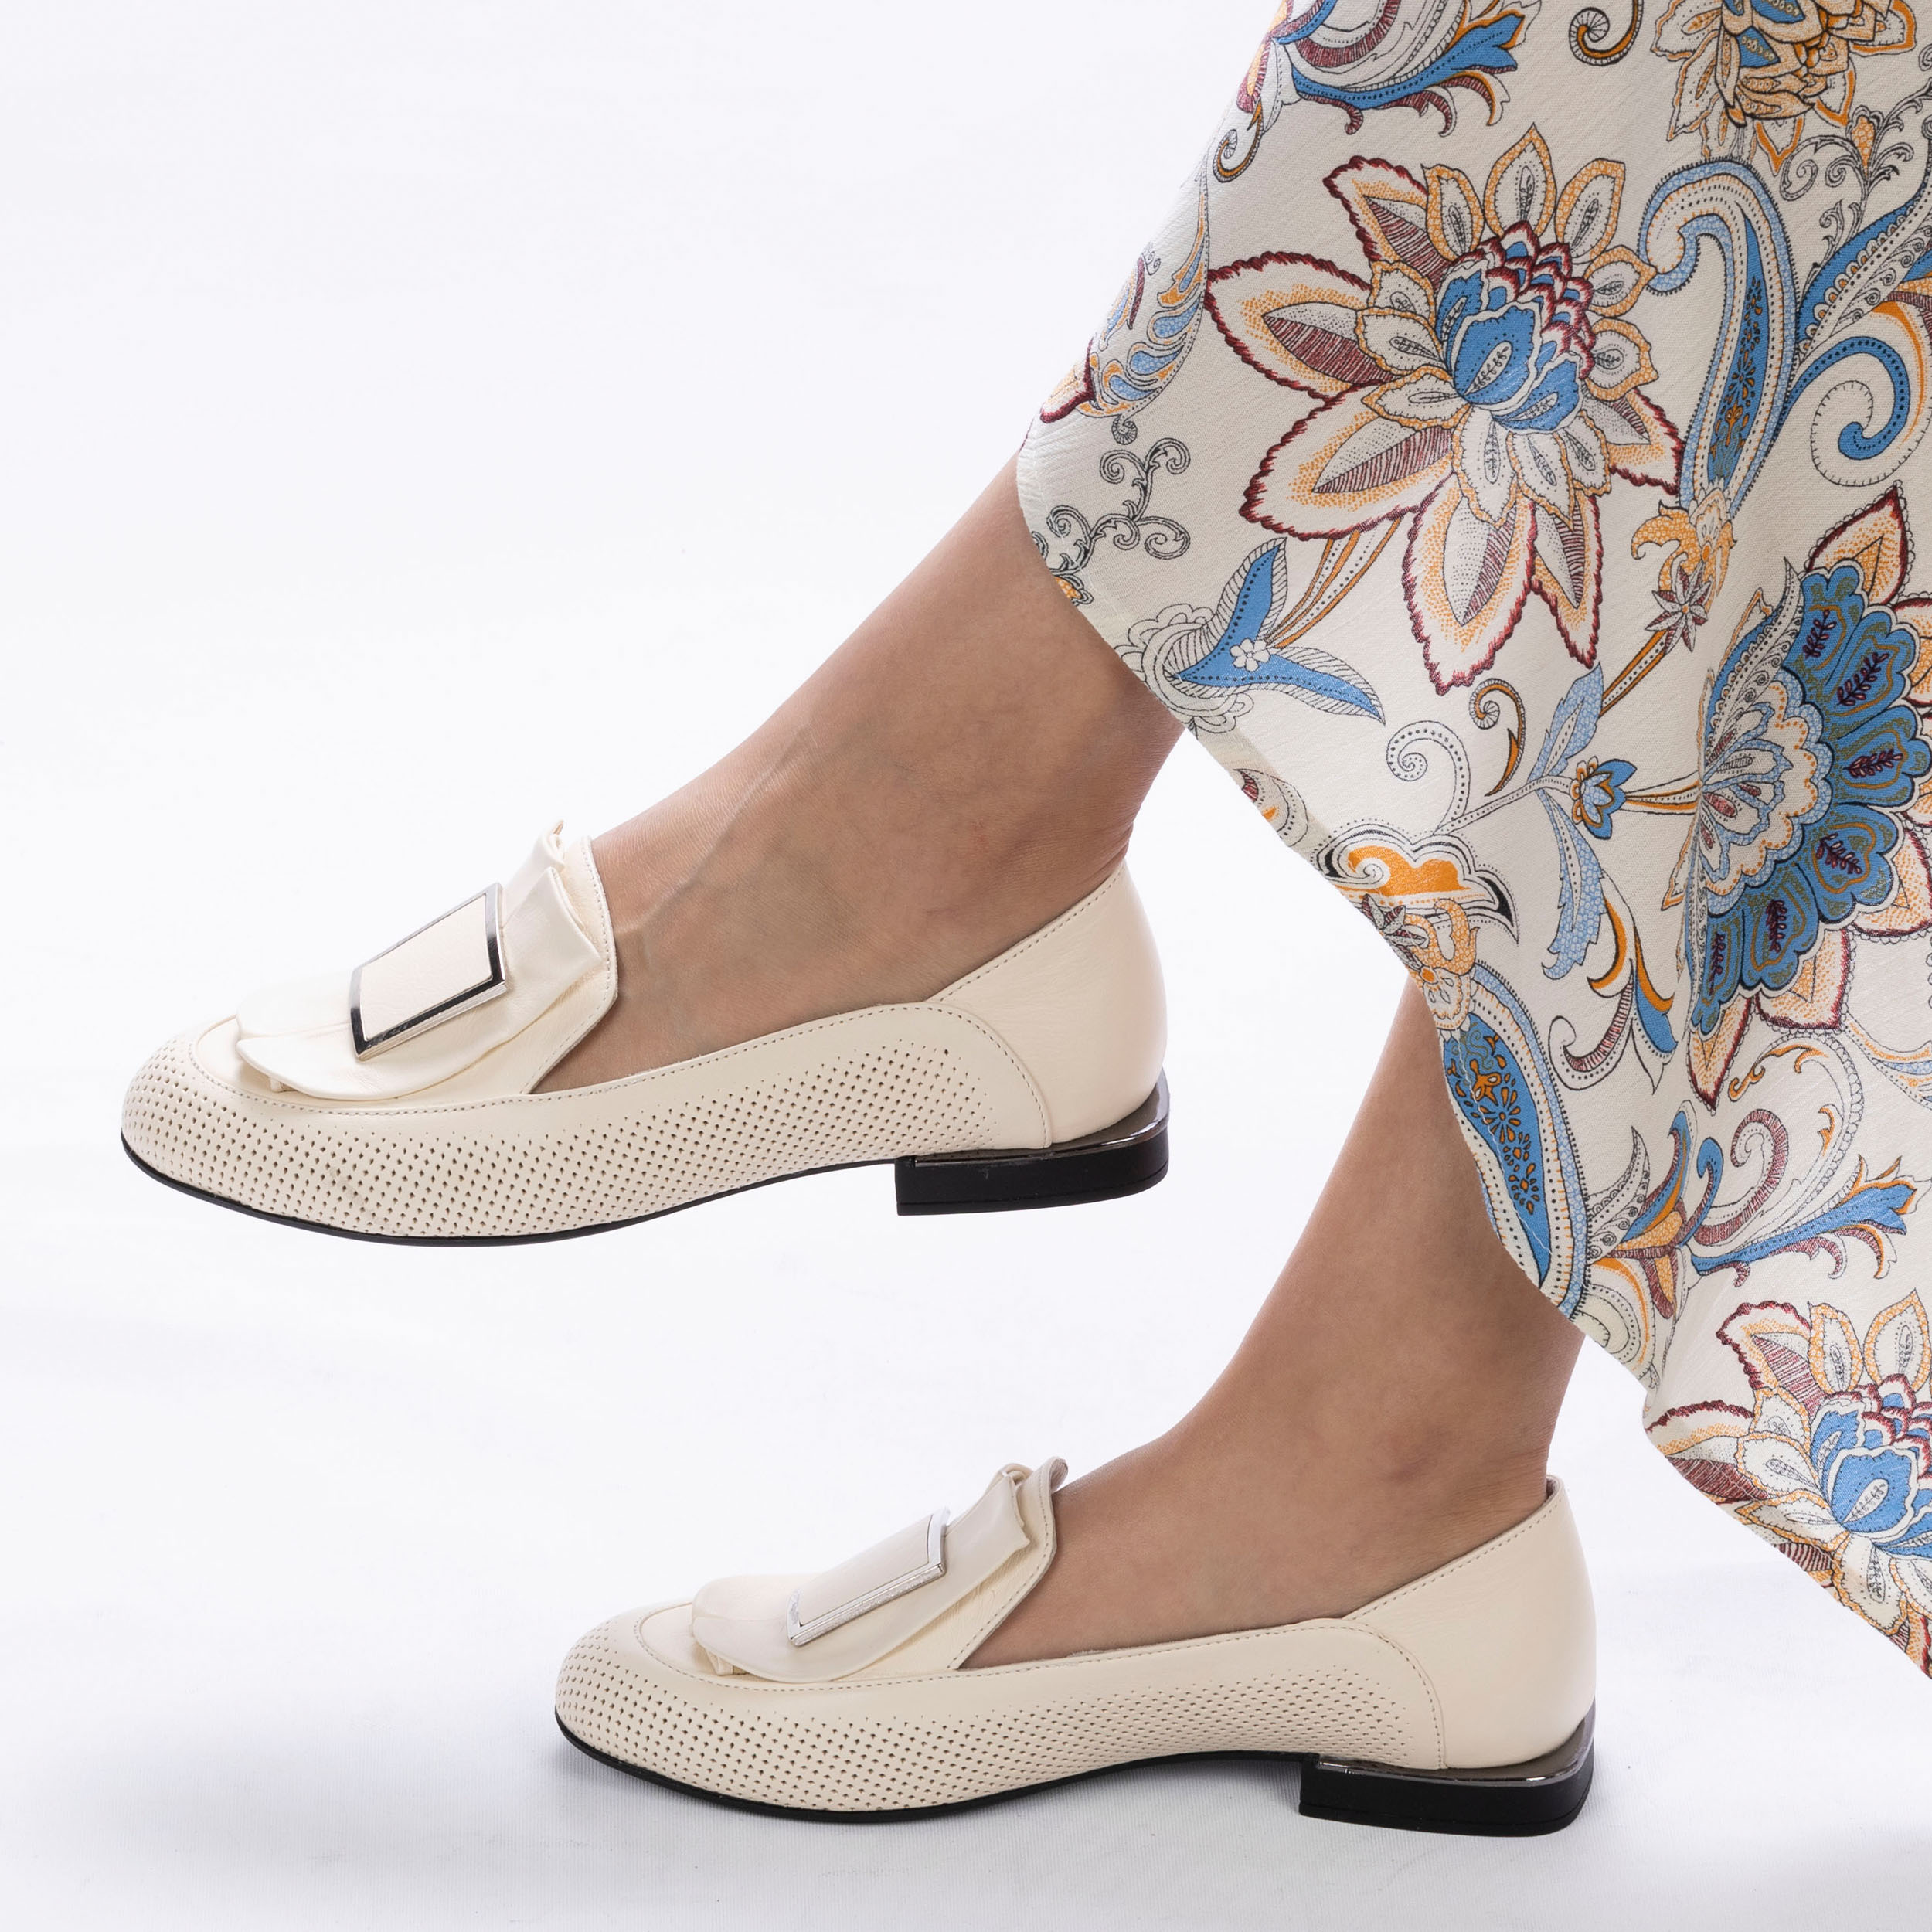 TwoEgoist Kadın Hakiki Deri Şık Tasarım Günlük Klasik Loafer - Babet Ayakkabı, Renk: Bej, Beden: 36